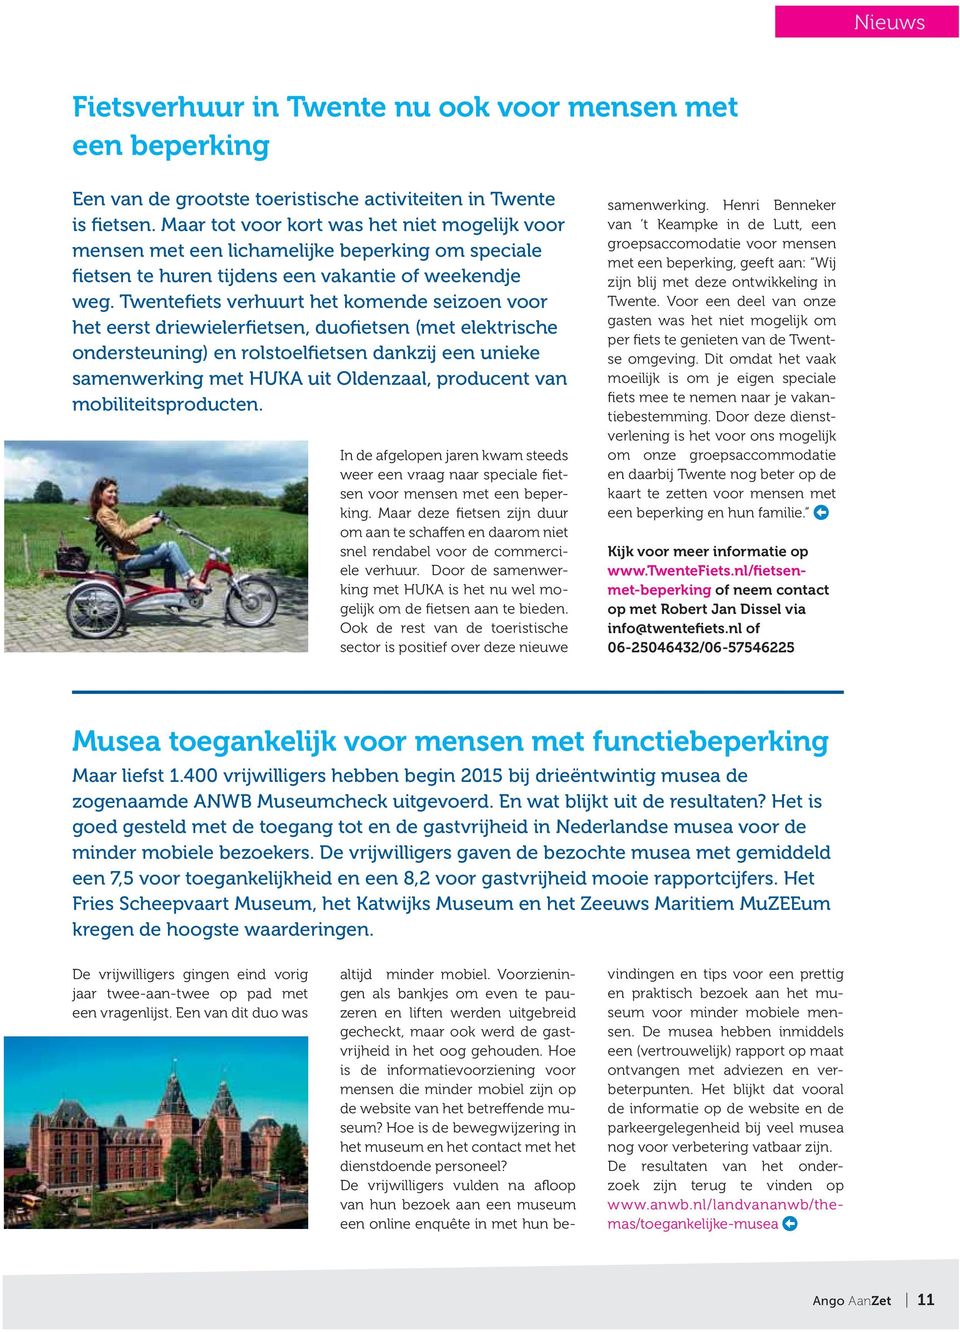 Twentefiets verhuurt het komende seizoen voor het eerst driewielerfietsen, duofietsen (met elektrische ondersteuning) en rolstoelfietsen dankzij een unieke samenwerking met HUKA uit Oldenzaal,